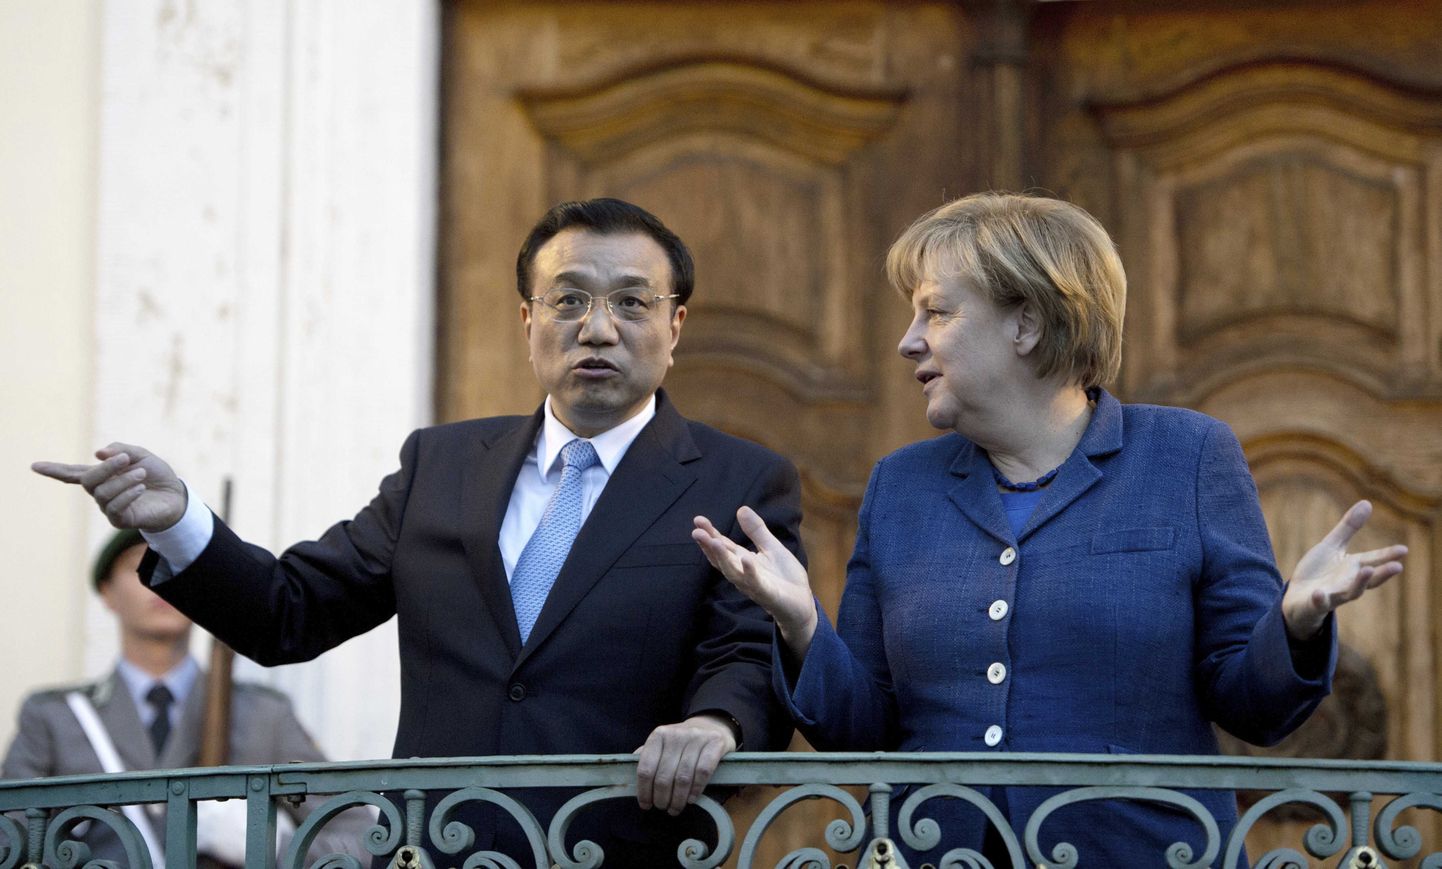 Hiina peaminister Li Keqiang ja Saksamaa kantsler Angela Merkel arutasid taas omavahelise kaubanduse tingimuste üle.